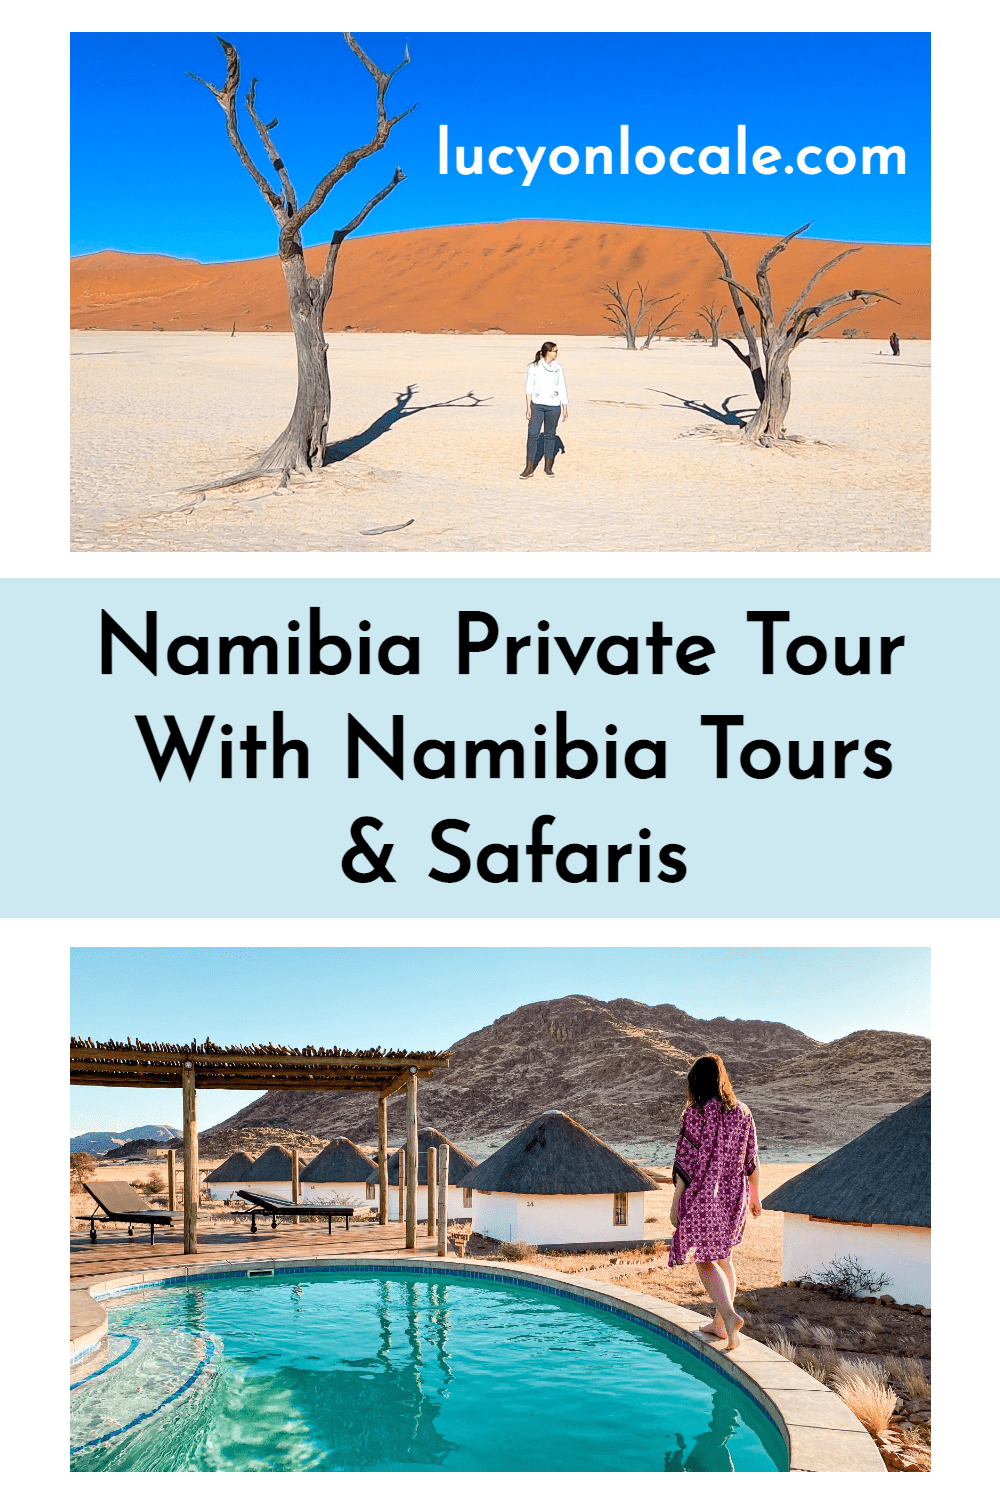 Namibia private tour with Namibia Tours & Safaris